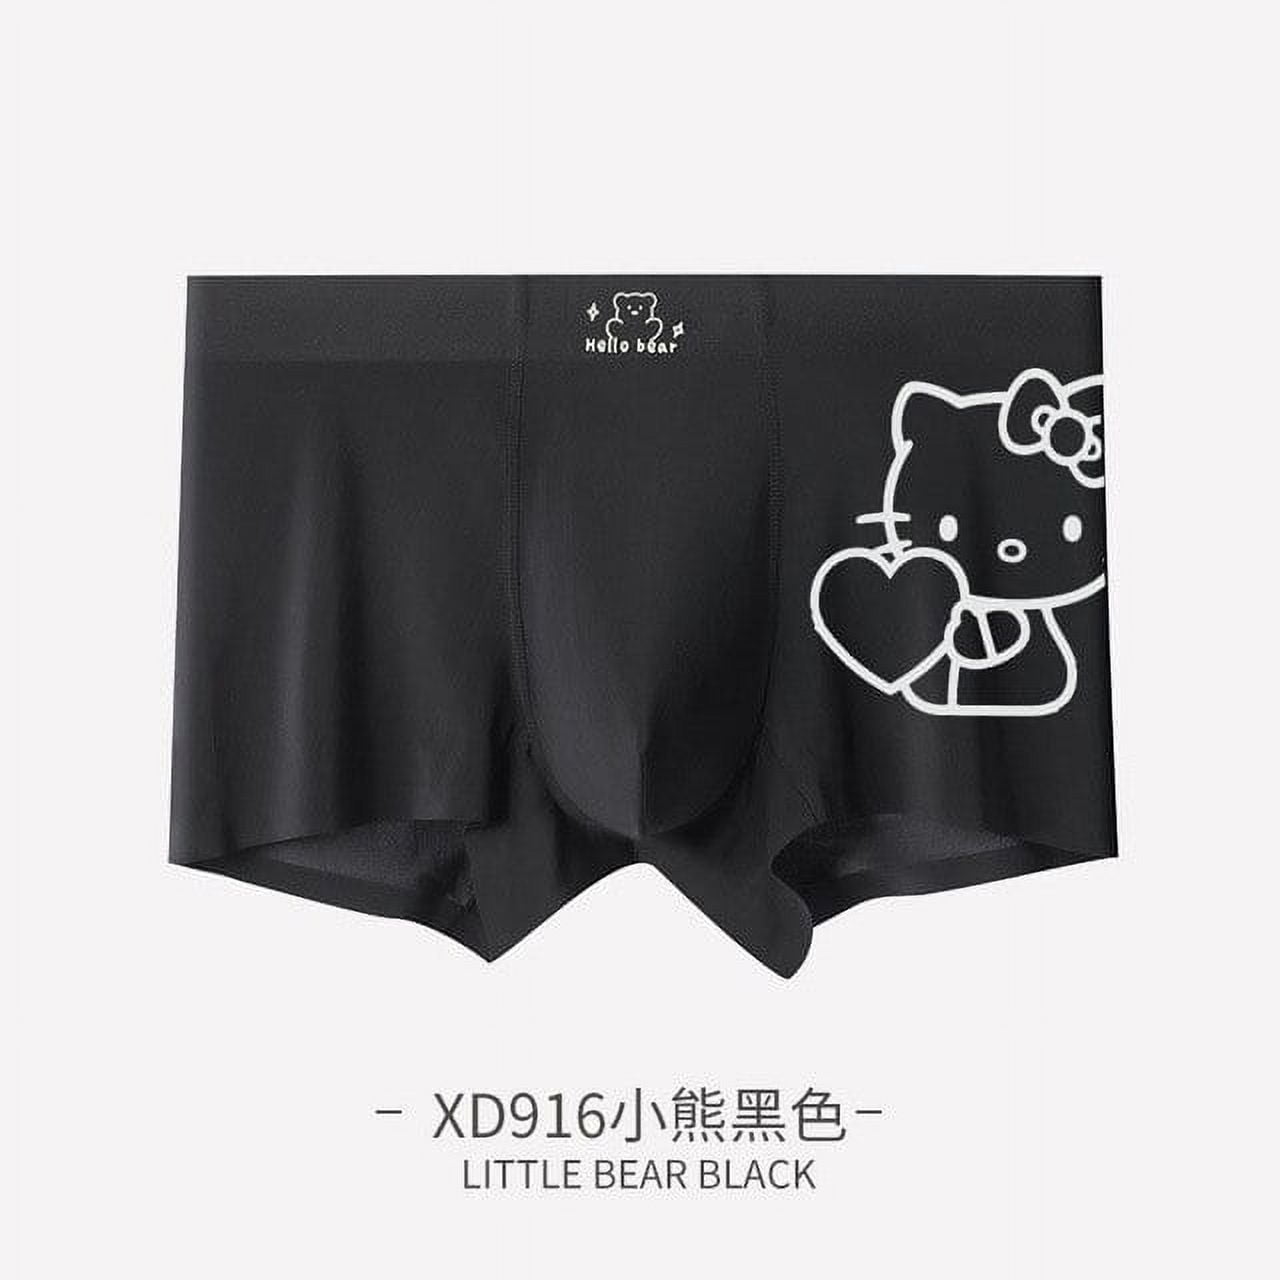 Man Hello Kitty Panties Fashion Loose Comfortable Underwear